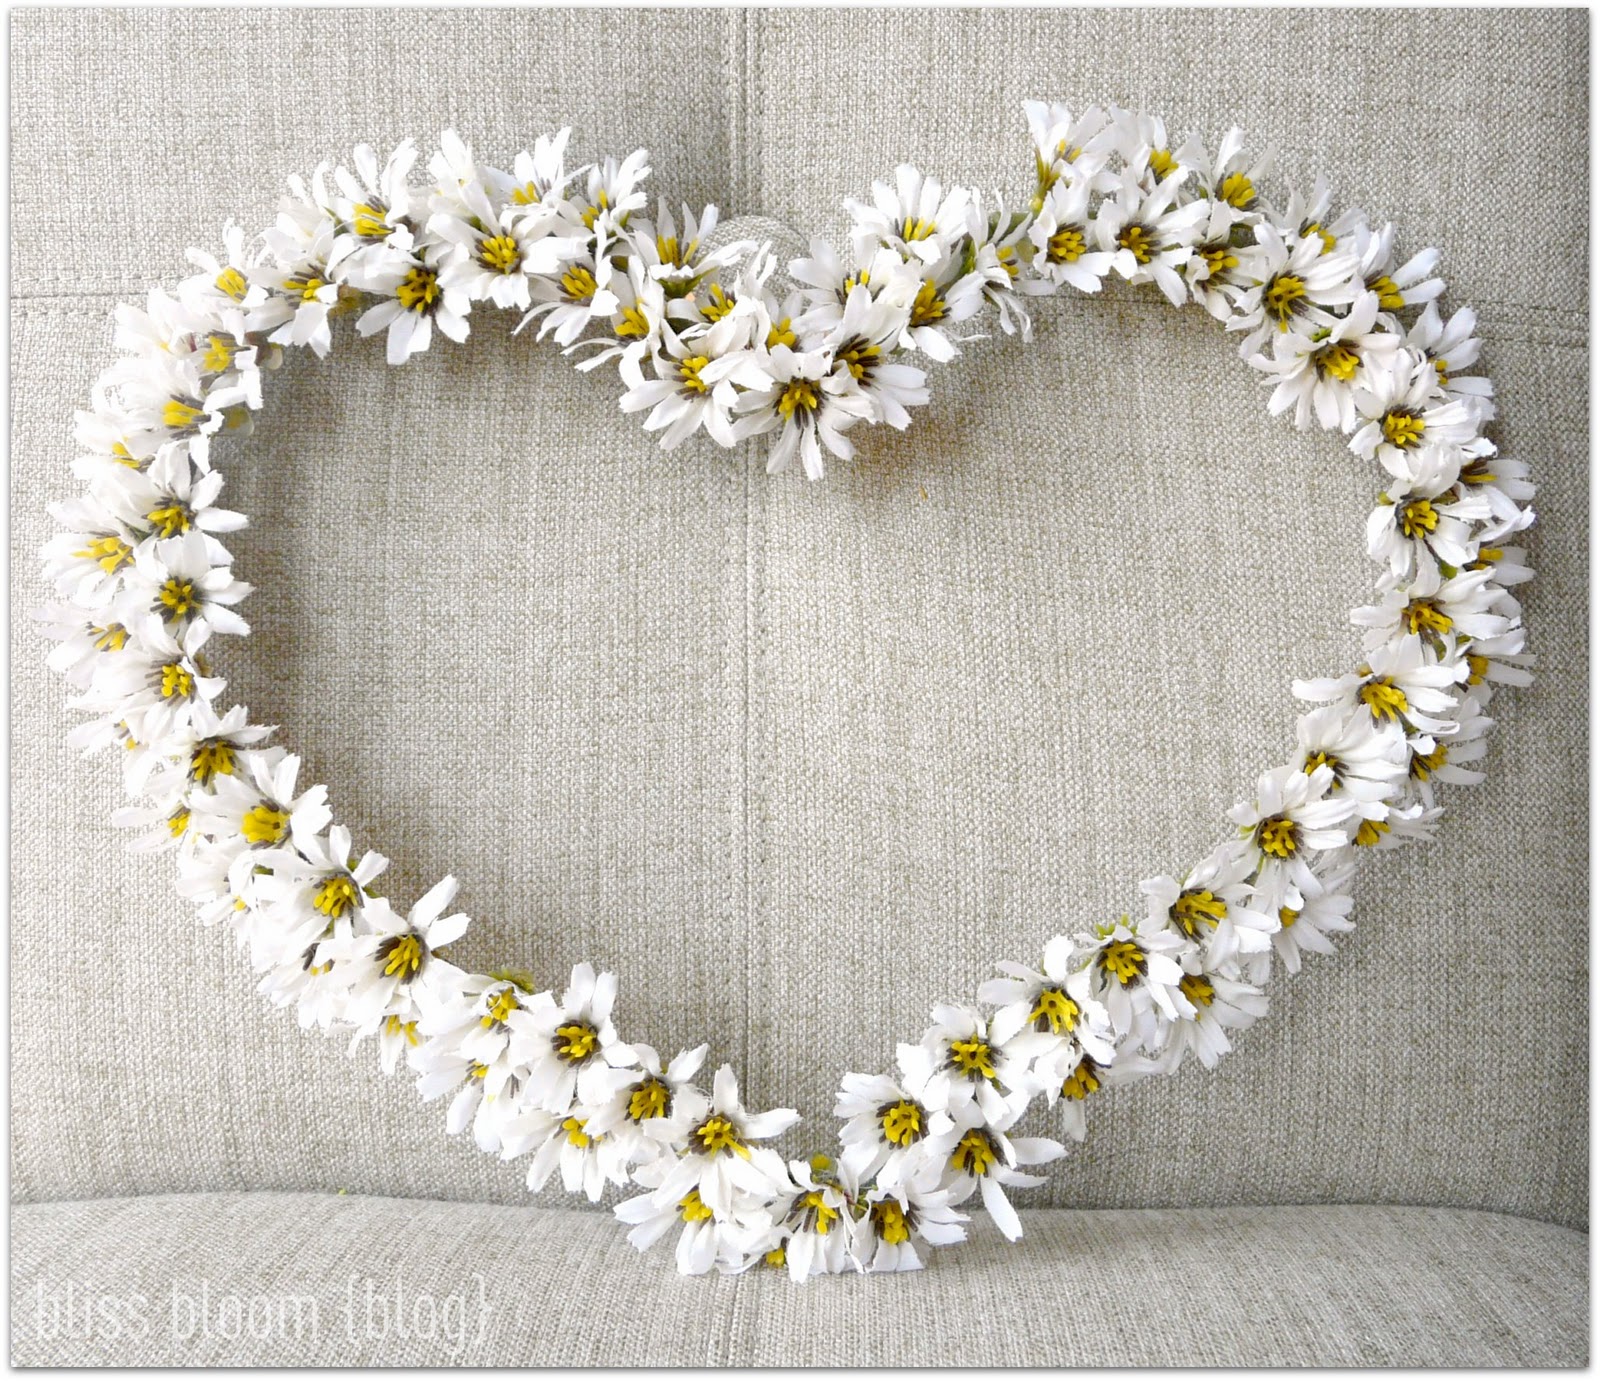 Make Flower Heart Wreaths